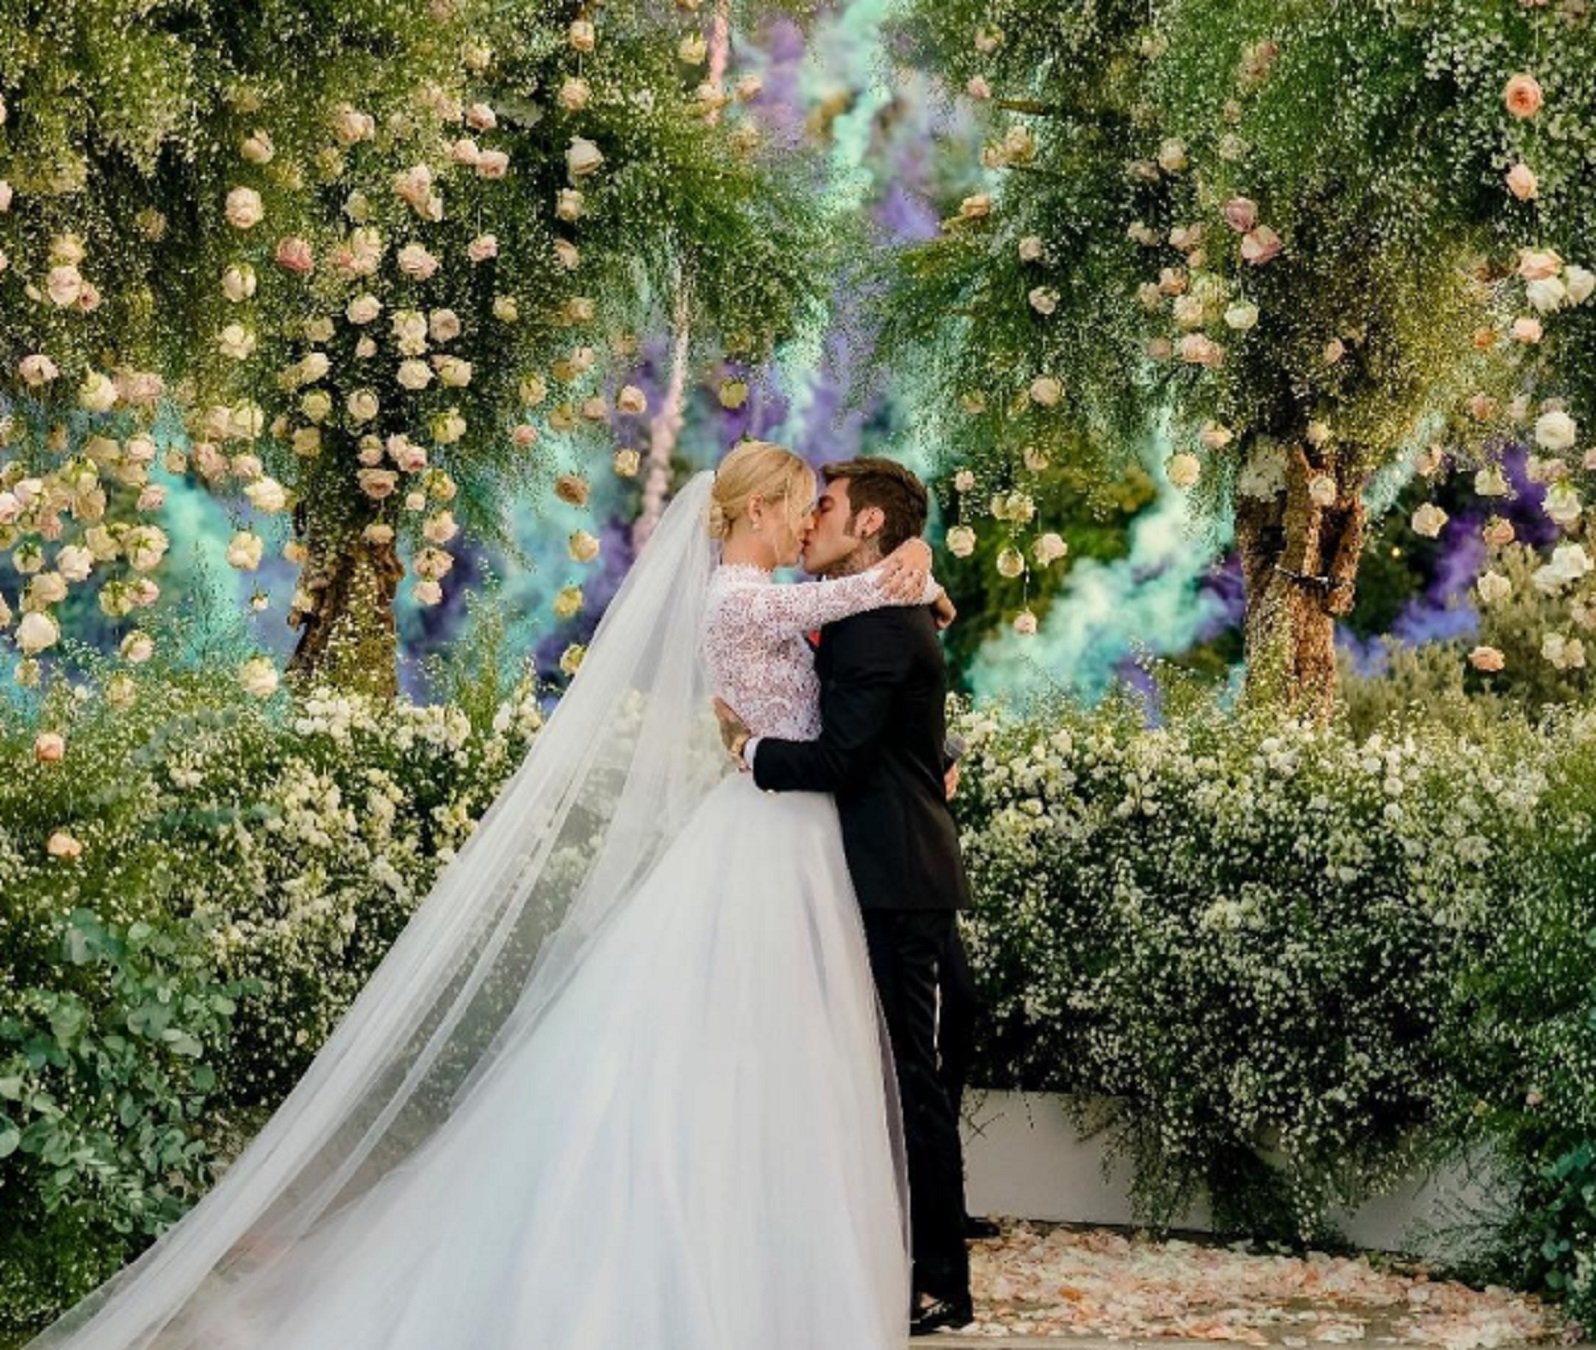 L’espectacular boda de conte de Chiara Ferragni i Fedez paralitza mig món